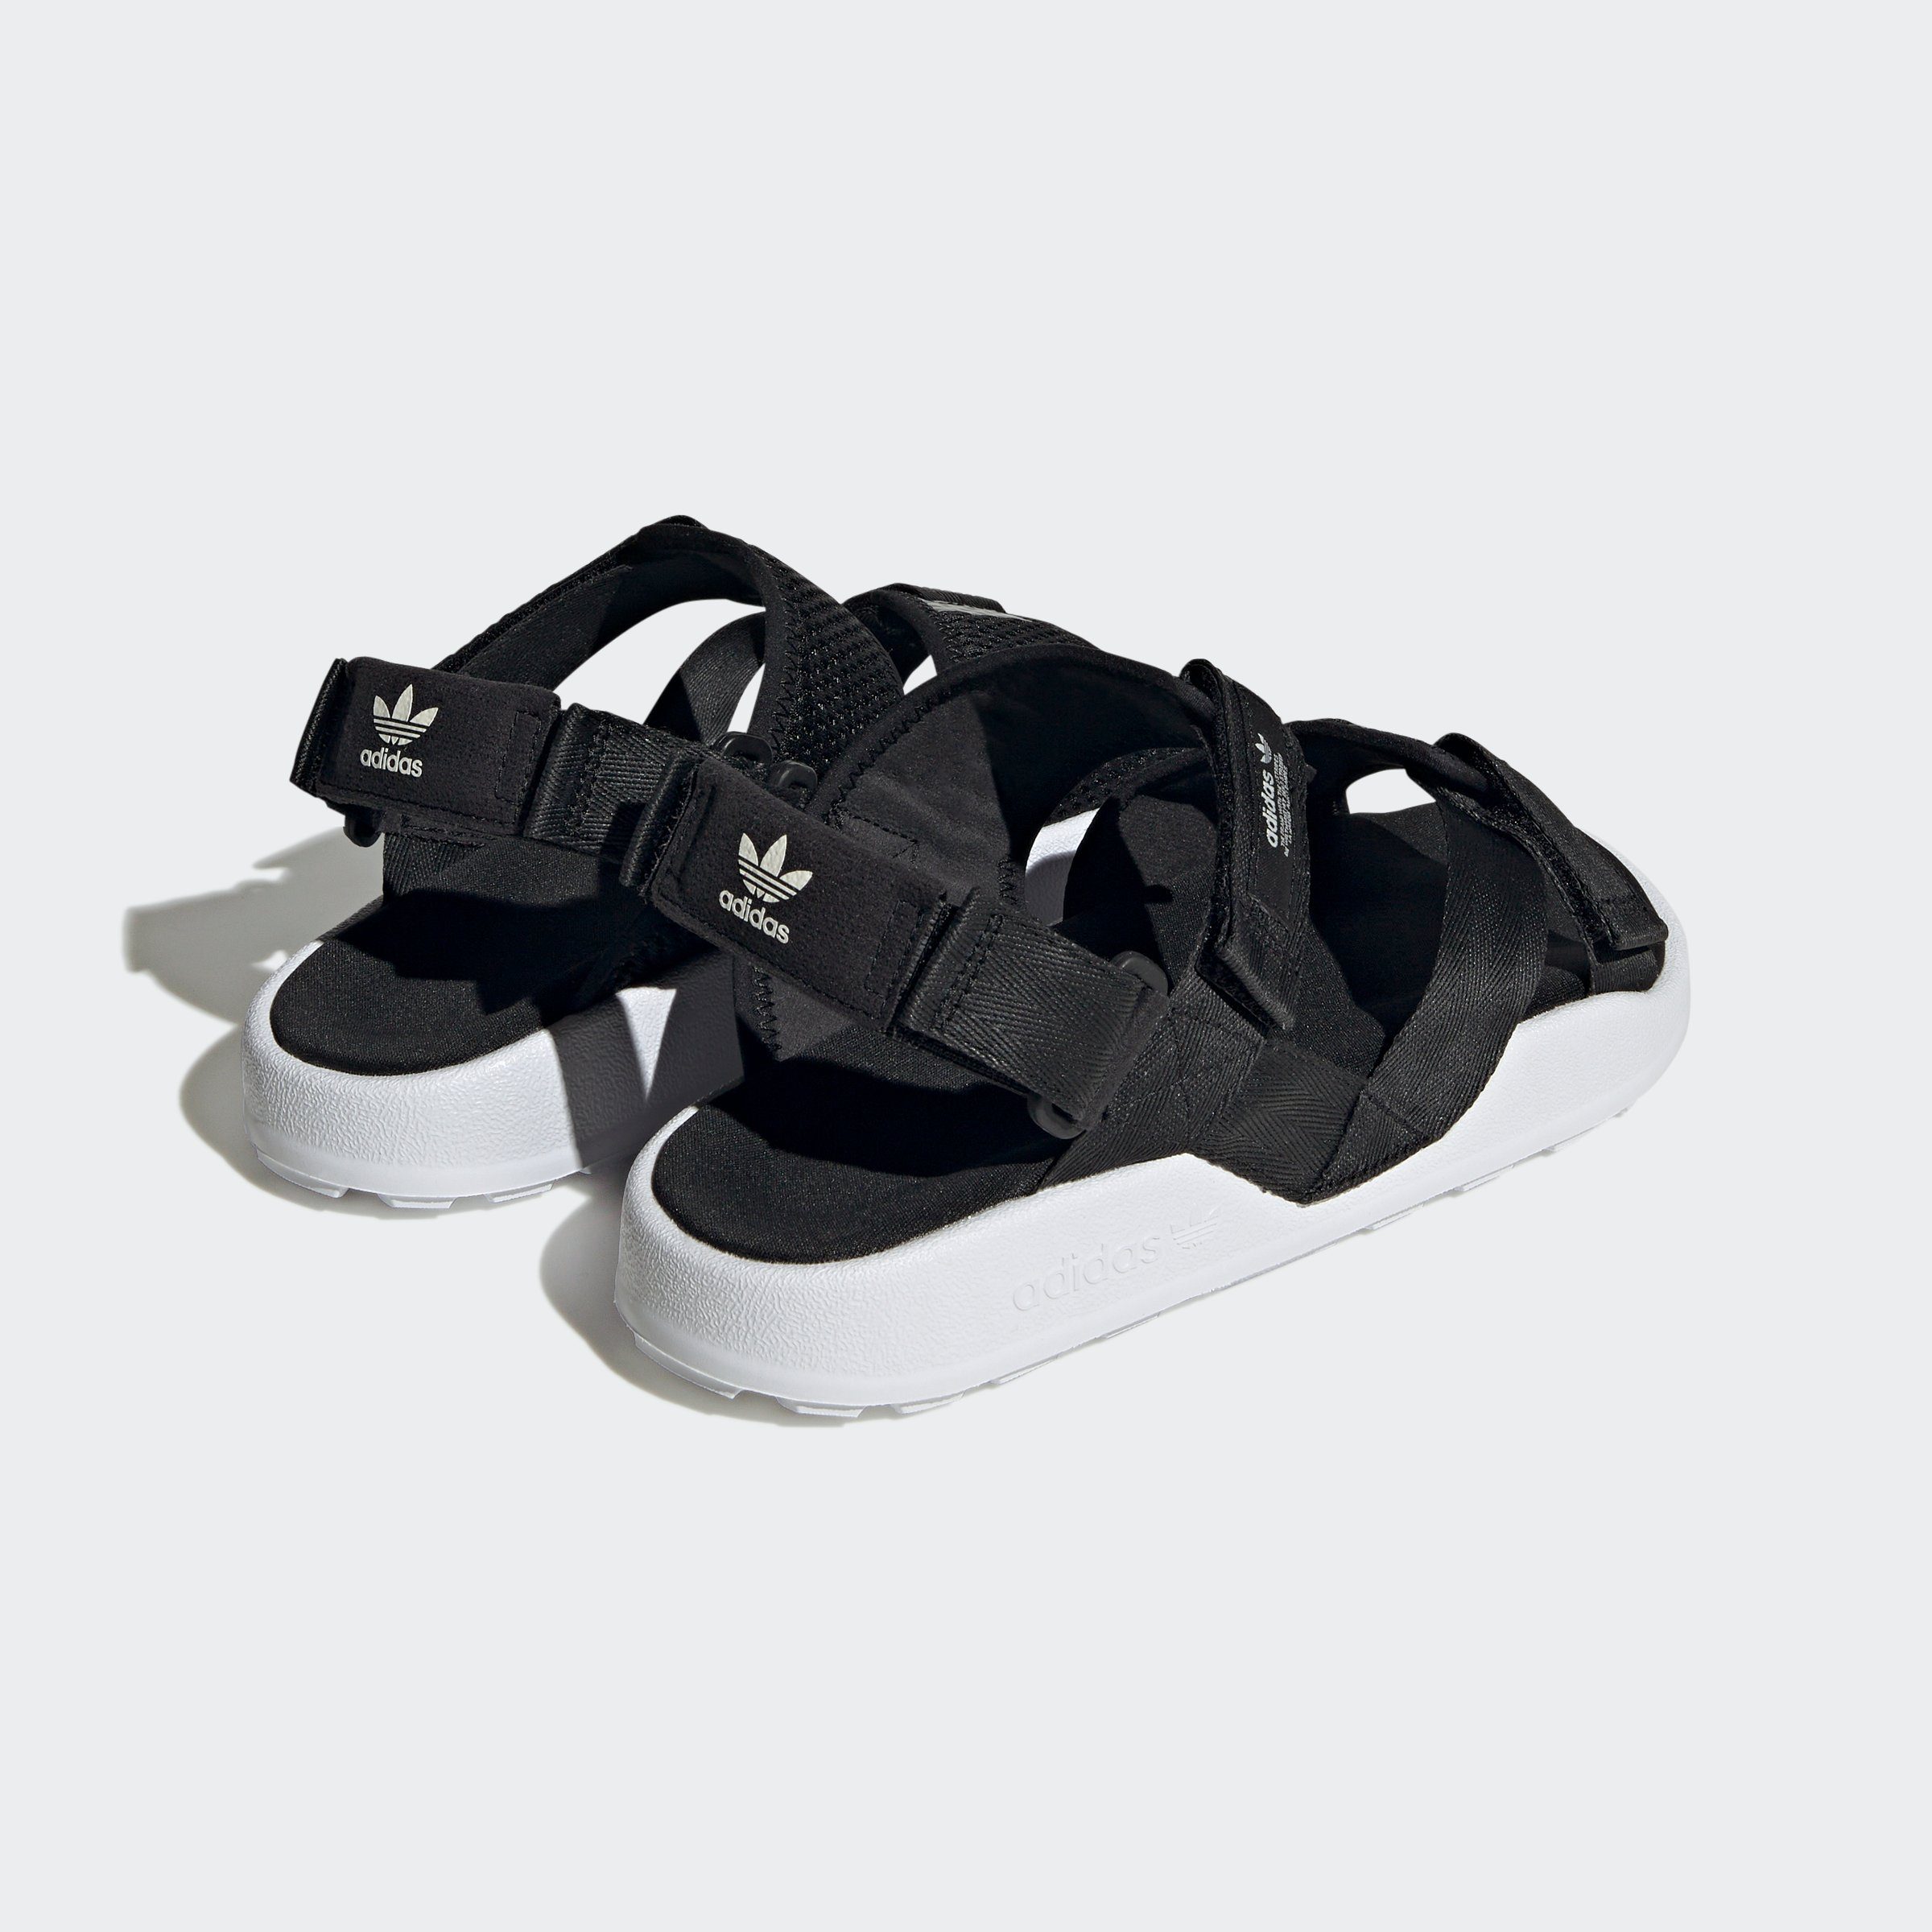 adidas / mit Black Cloud / ADVENTURE SANDALE White White Off Originals Sandale ADILETTE Klettverschluss Core